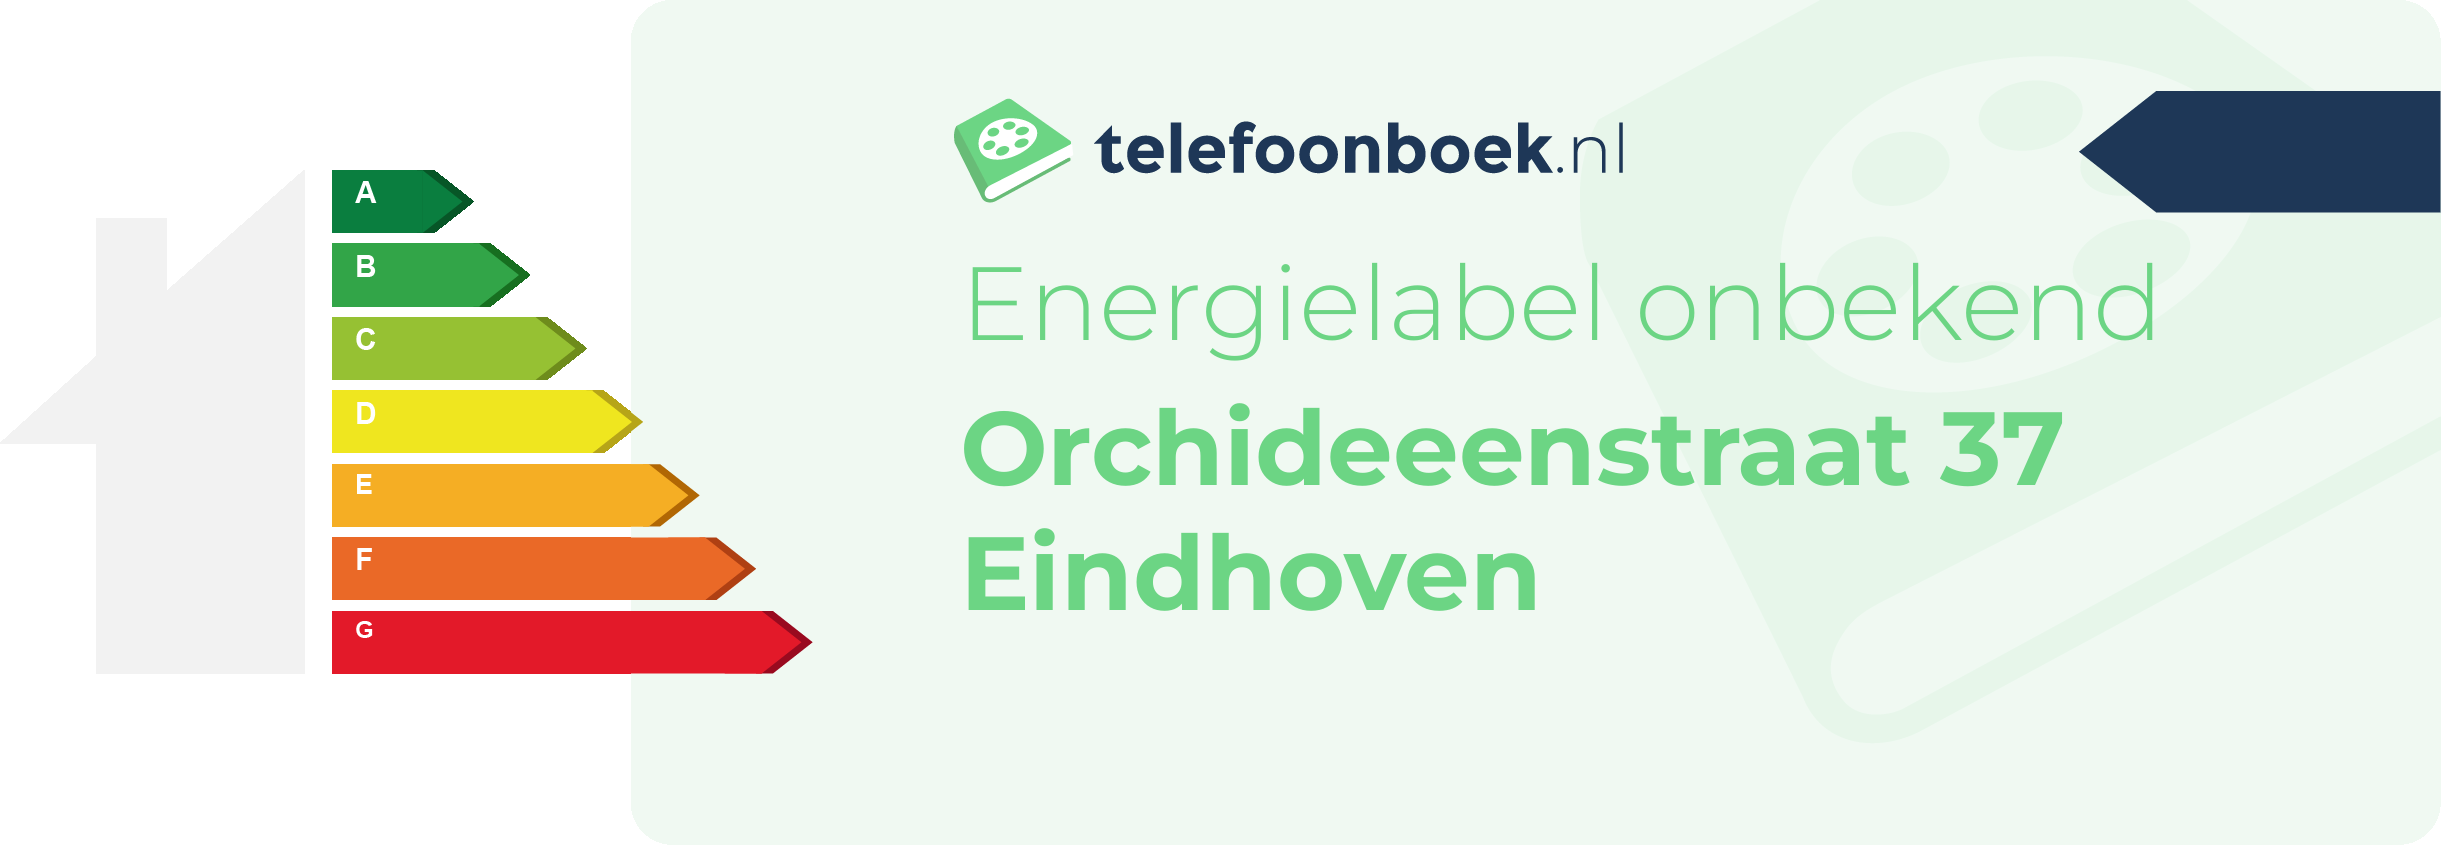 Energielabel Orchideeenstraat 37 Eindhoven